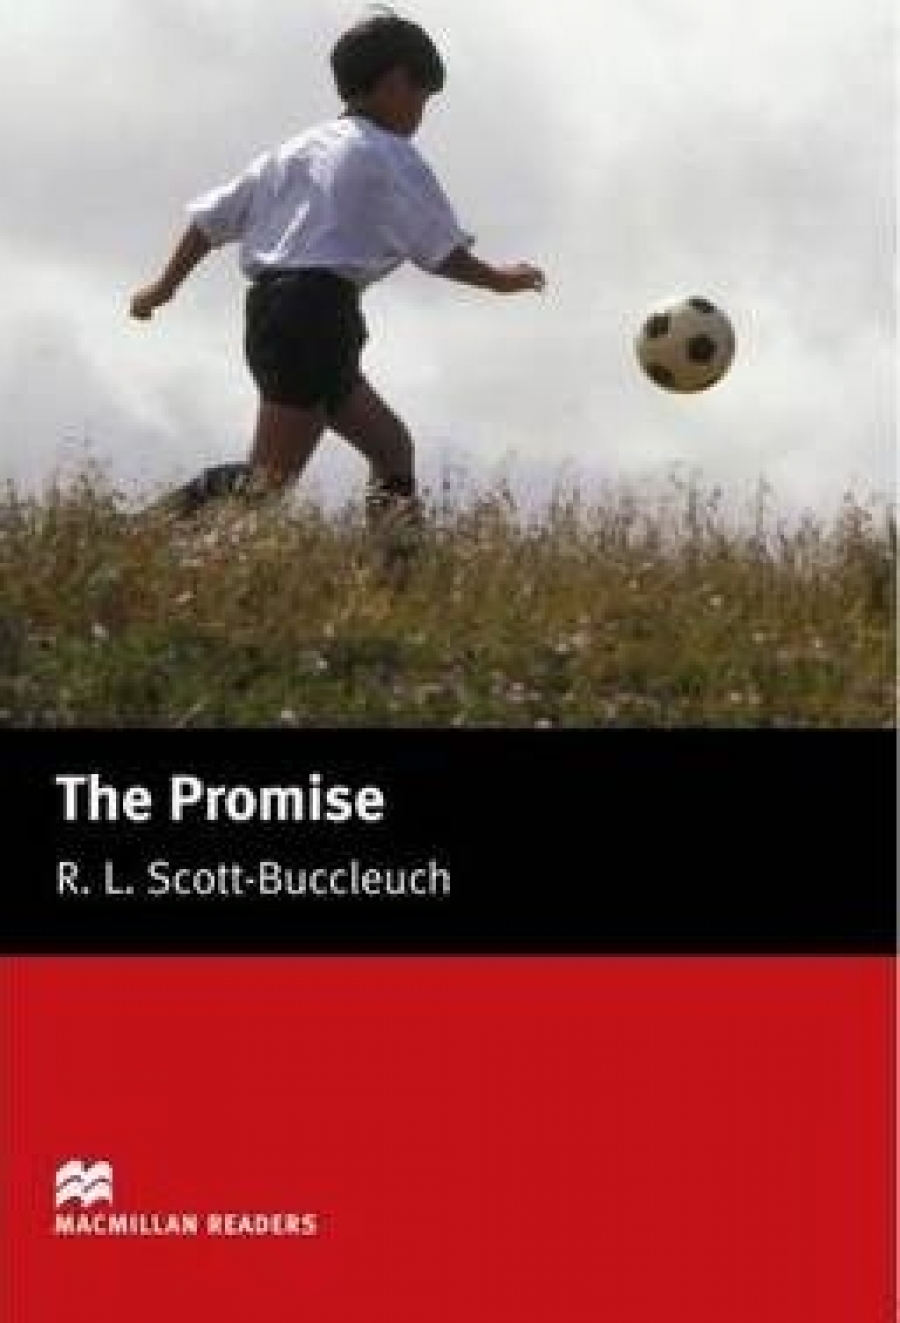 R. L. Scott-Buccleuch The Promise 